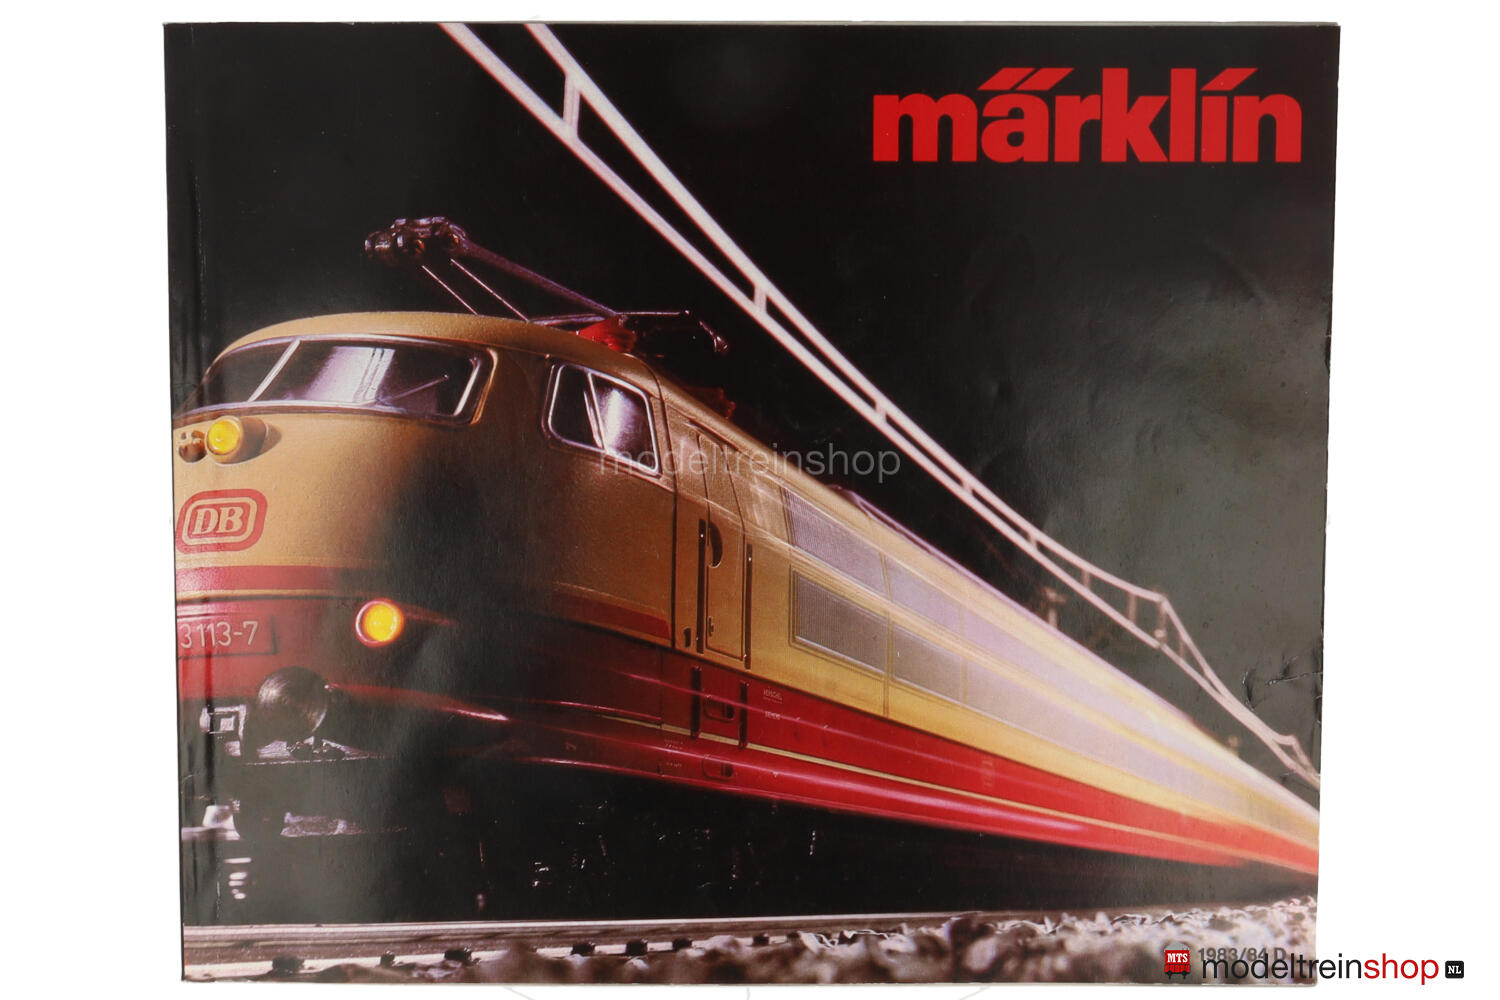 Onze onderneming Klas wij Marklin Catalogus 1983/84 - Duitse Uitgave met prijslijst - Modeltreinshop